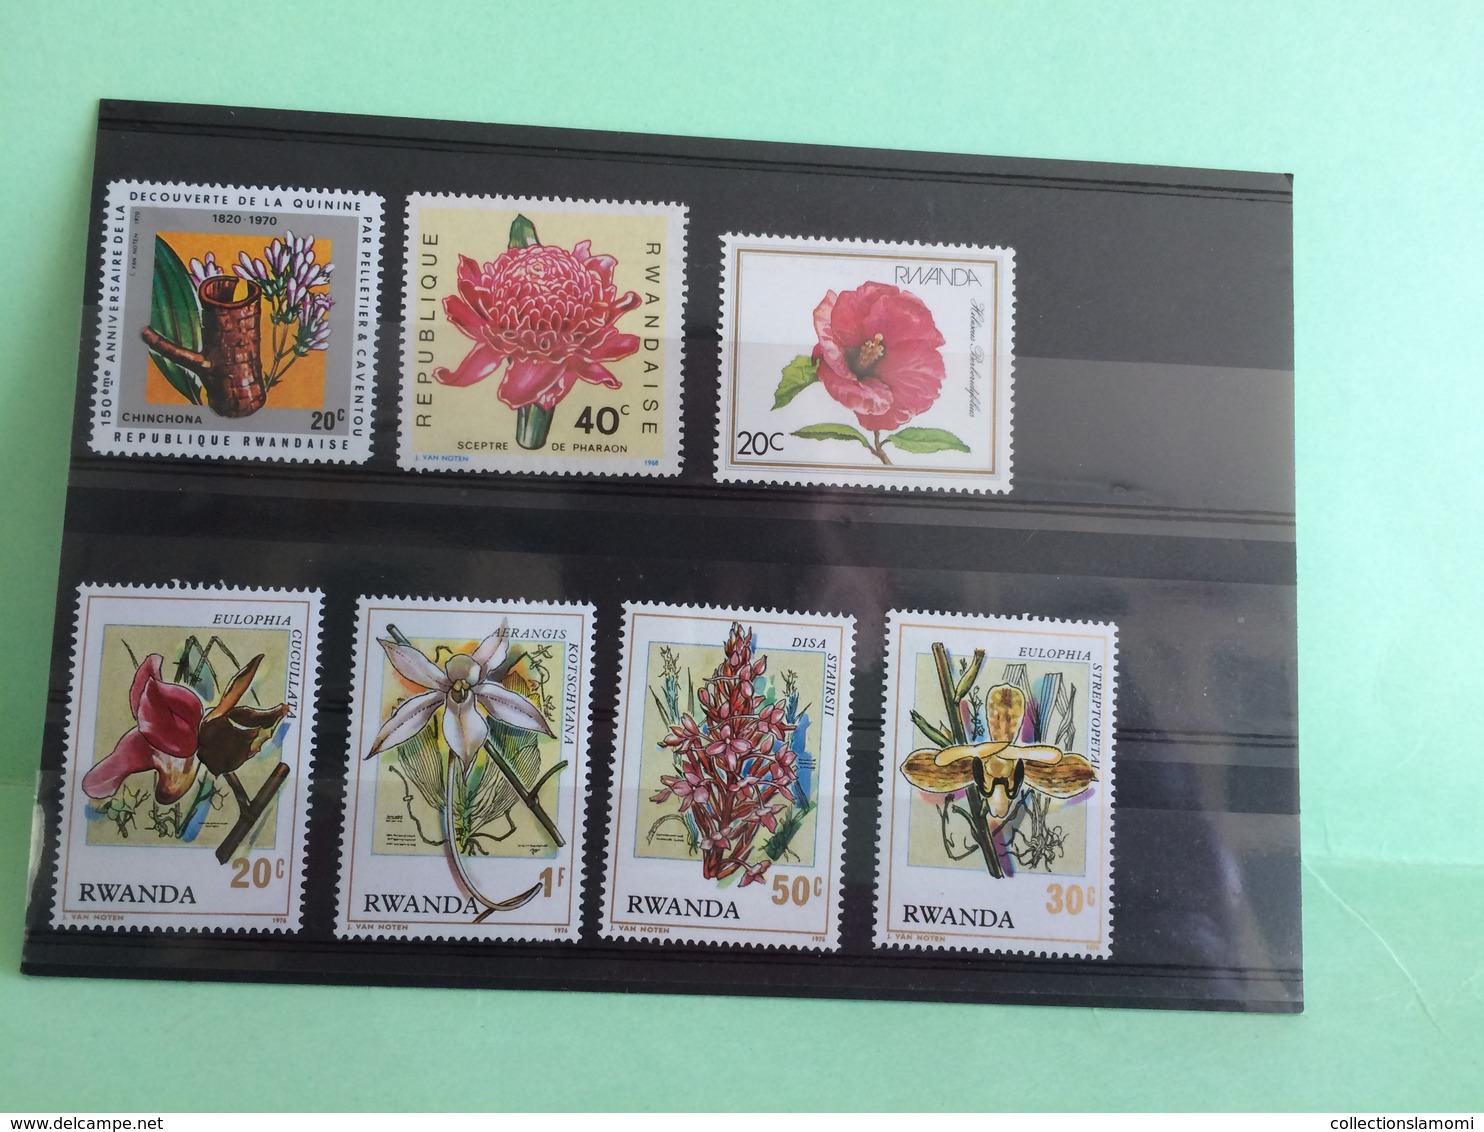 Lot timbres neufs, Afrique Lot Rwandaise voir photos (n°11)